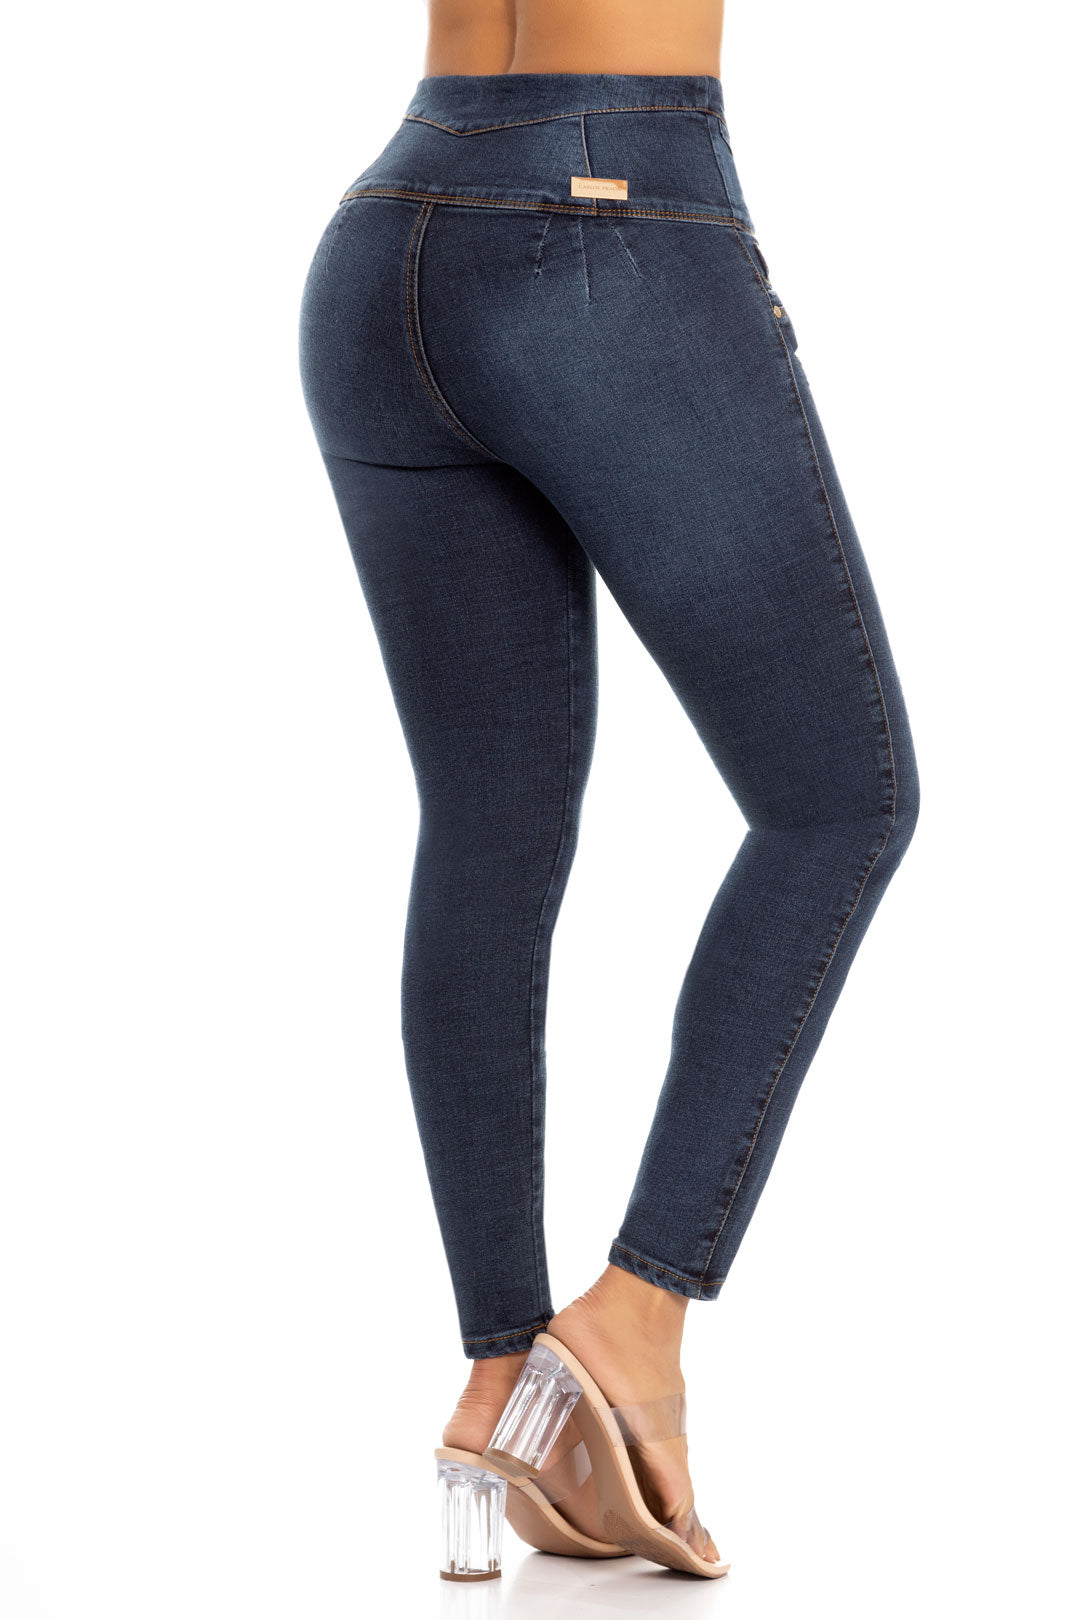 Pantalón Jeans con exclusivo diseño levanta cola Colombiano que